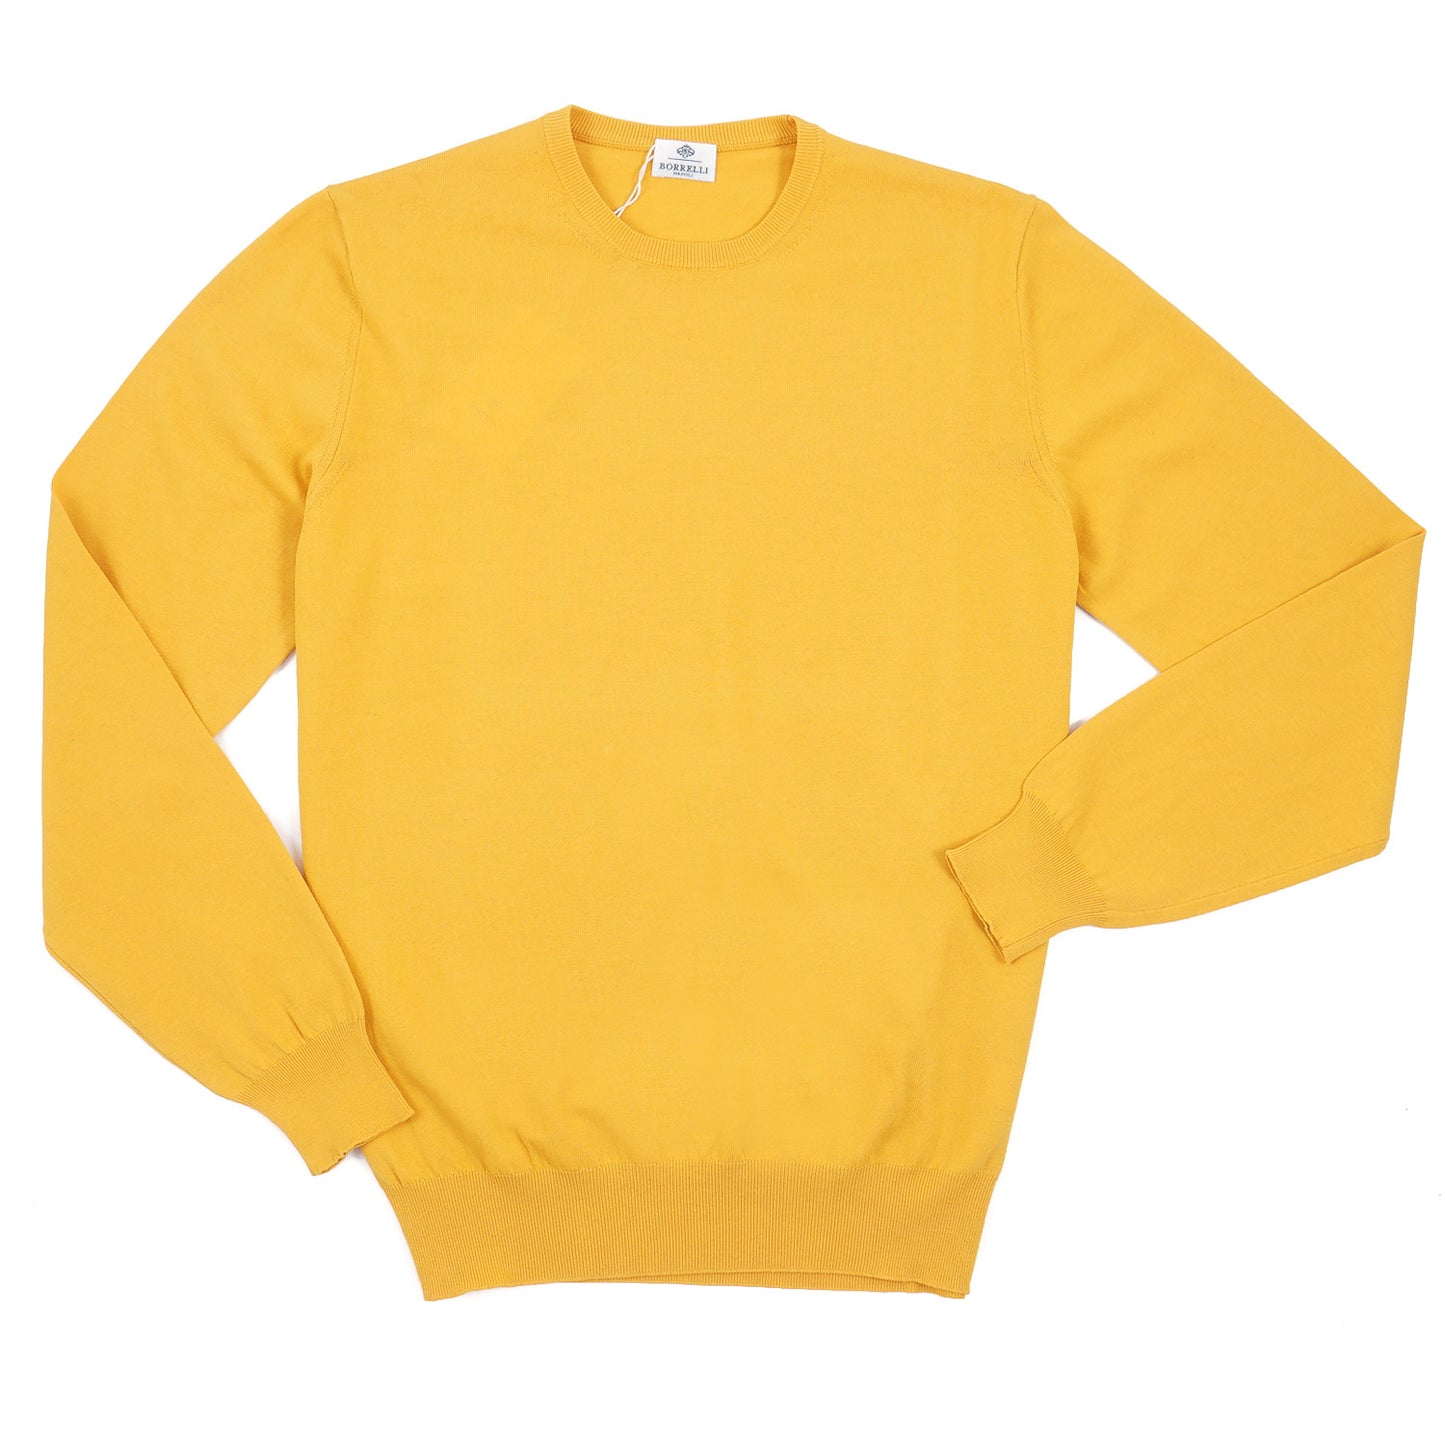 Luigi Borrelli Lightweight Cotton Sweater - Top Shelf Apparel